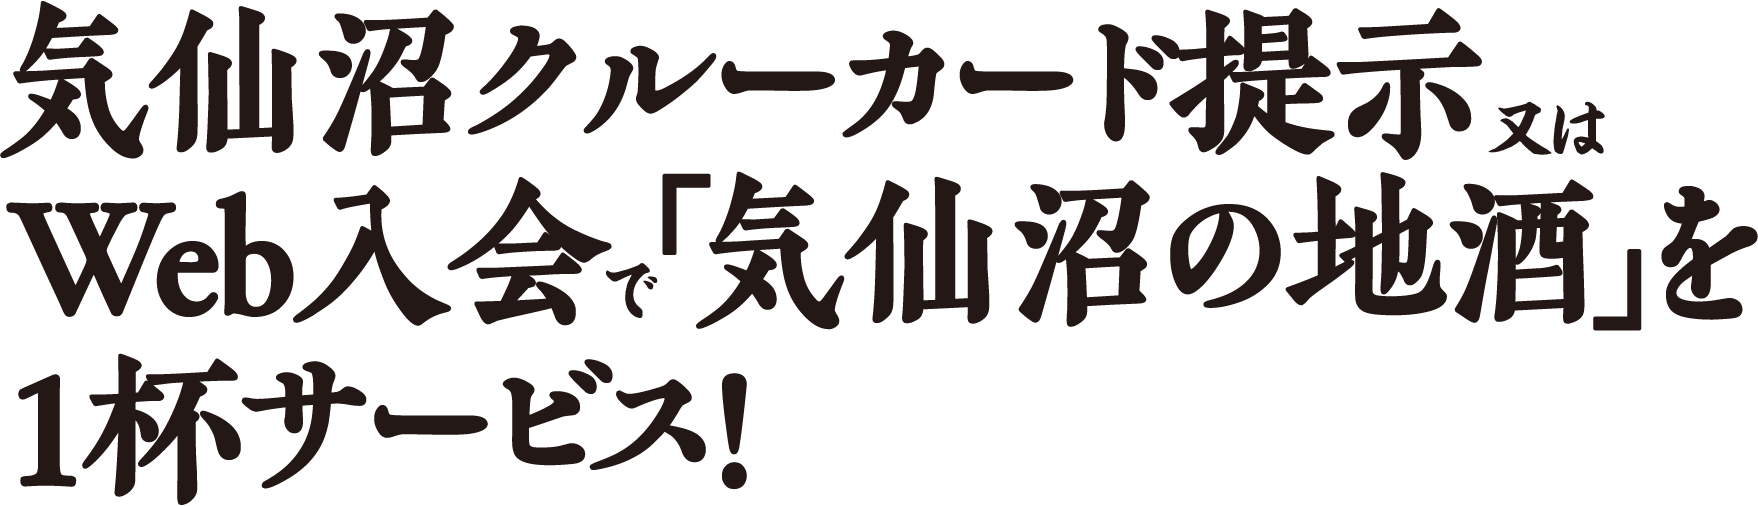 気仙沼クルーカード提示又は Web入会 「気仙沼の地酒」を 1杯サービス!